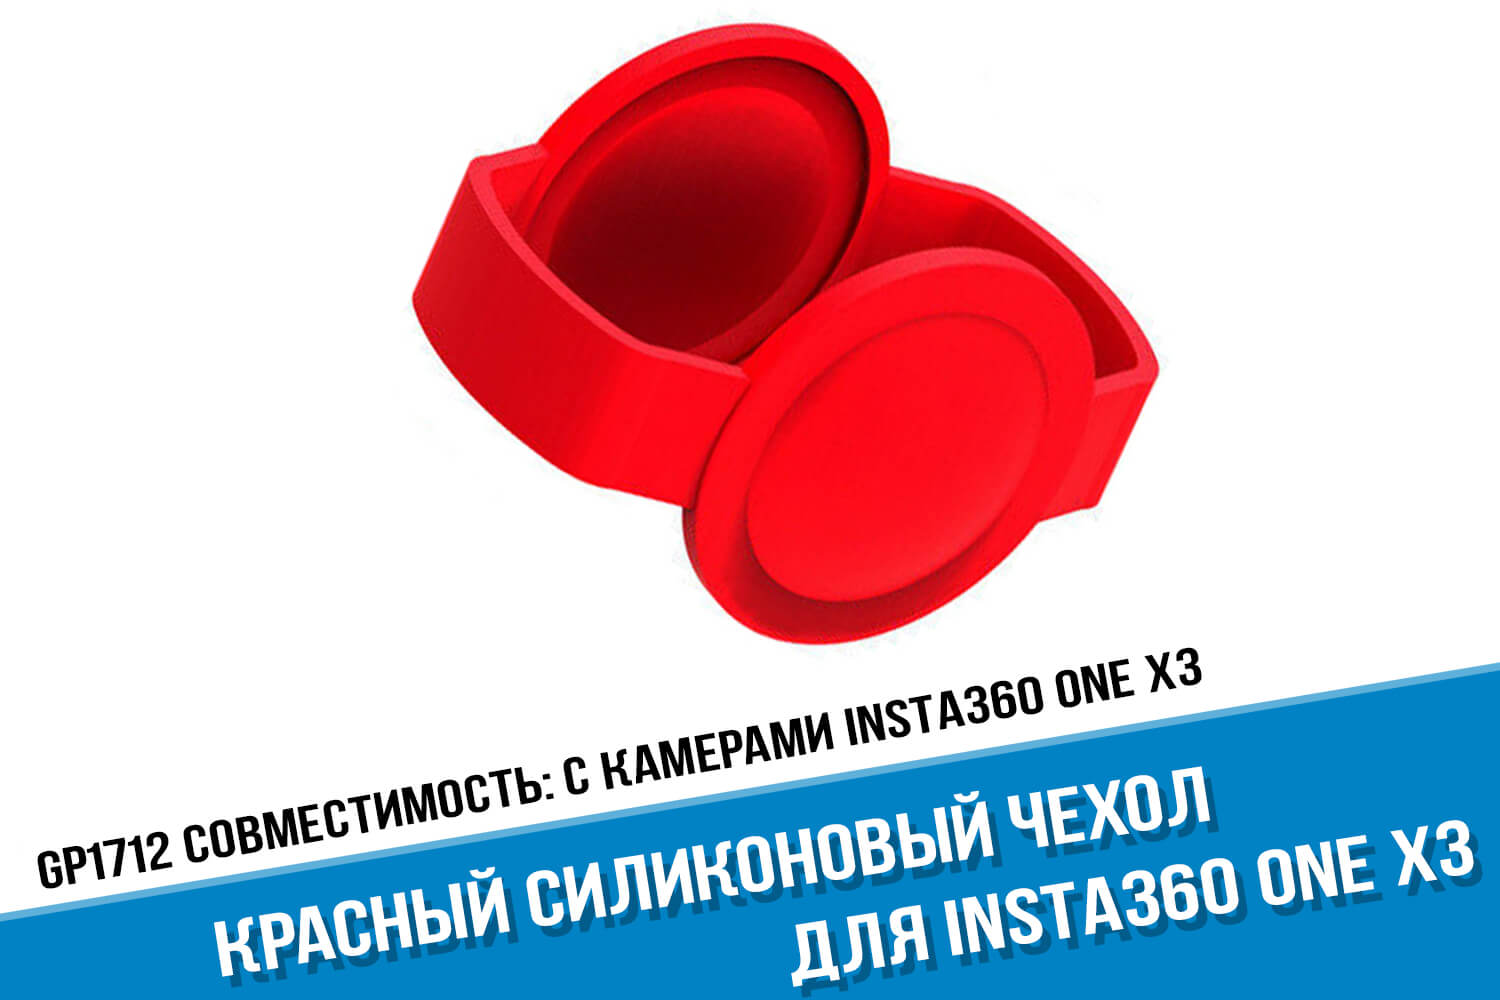 Красный чехол для камеры Insta360 One X3